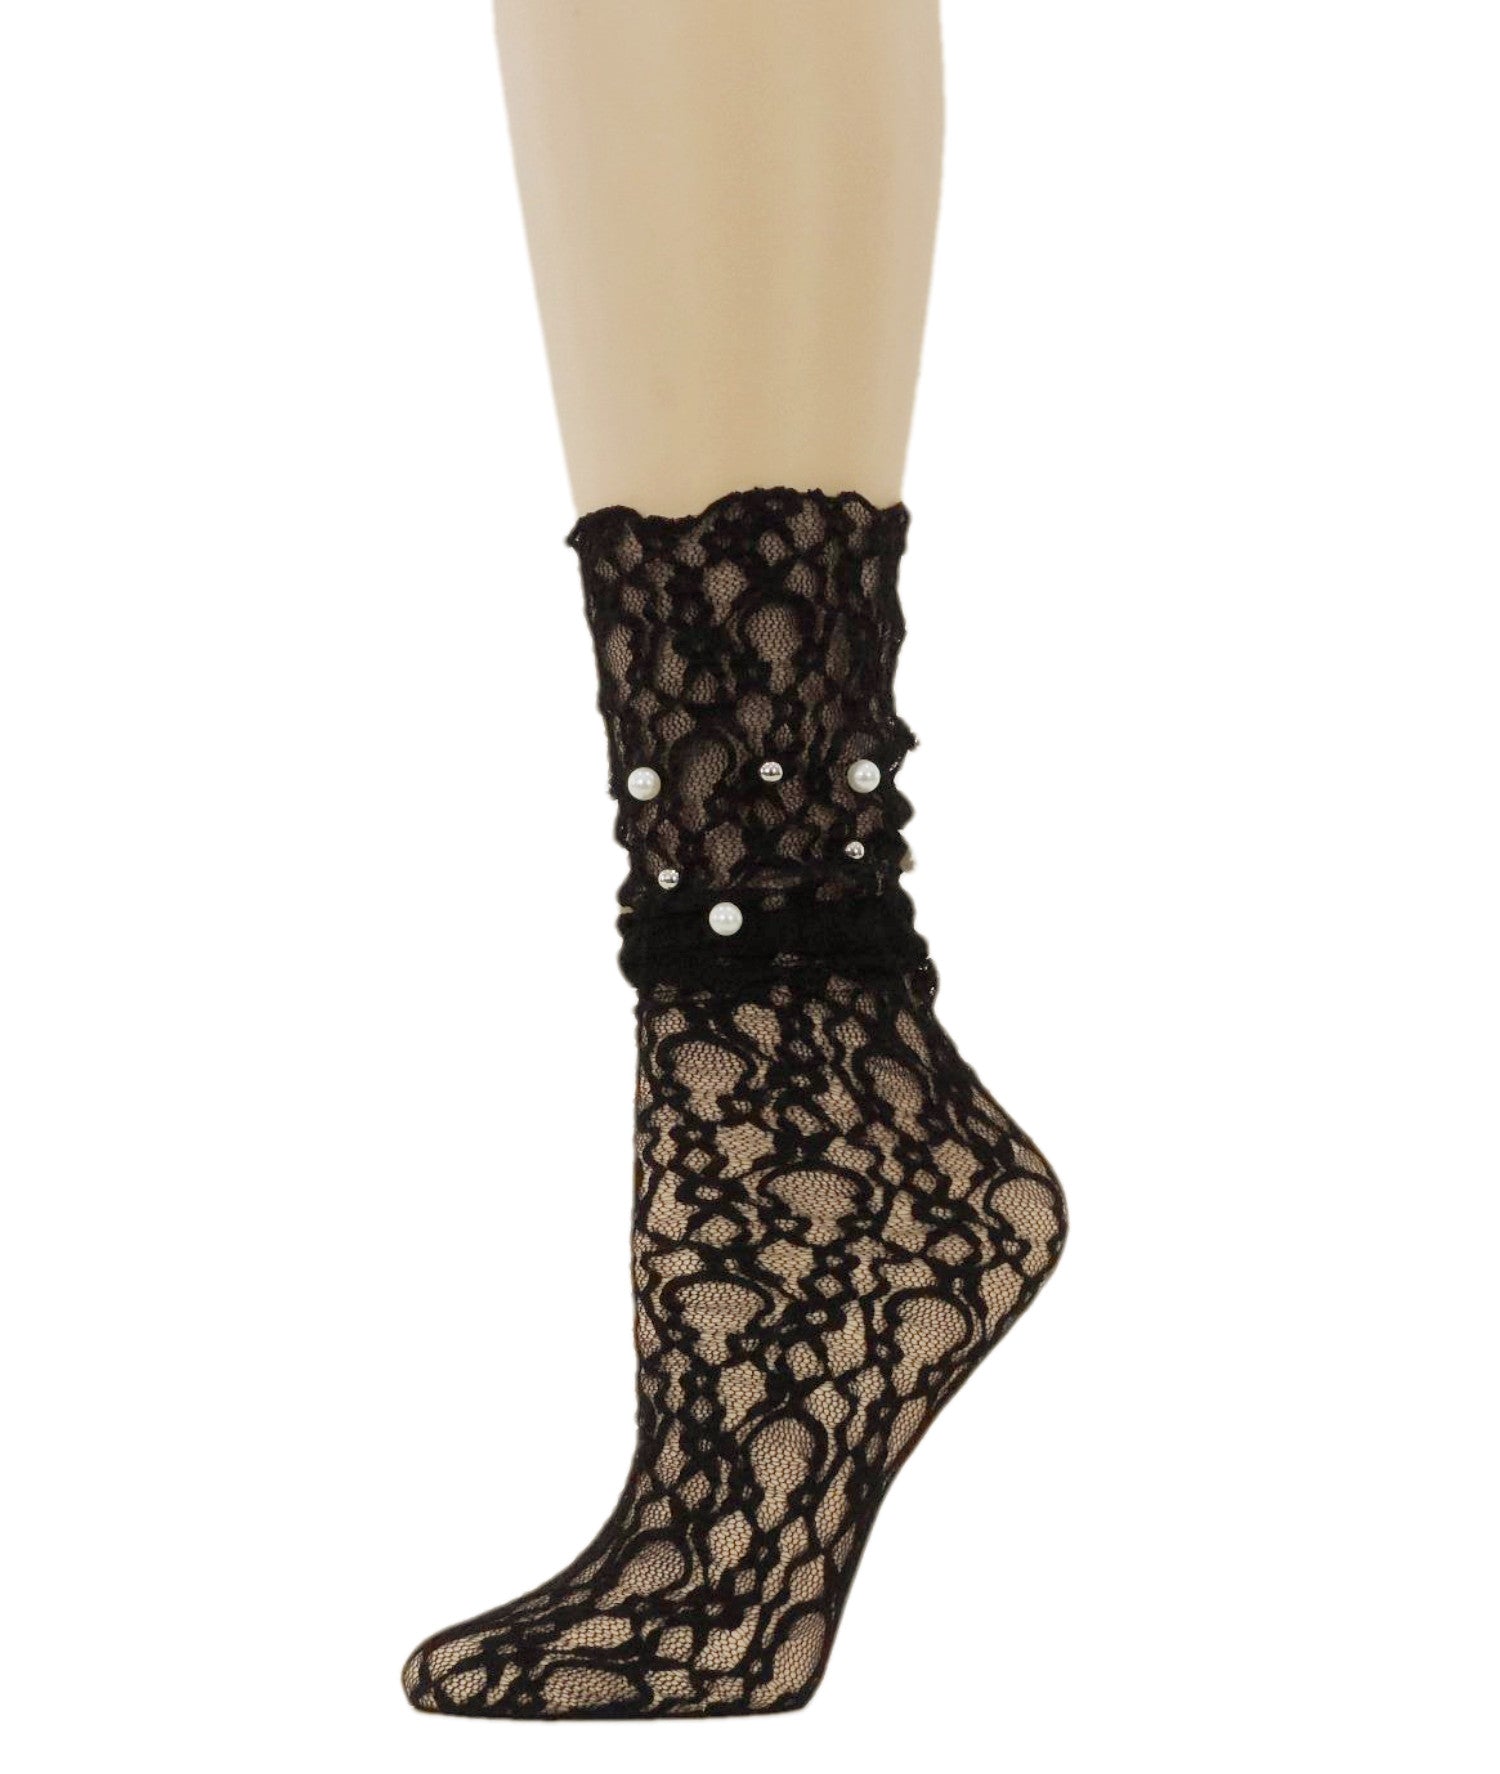 Elegant Black Mesh Socks with Pearls - Global Trendz Fashion®